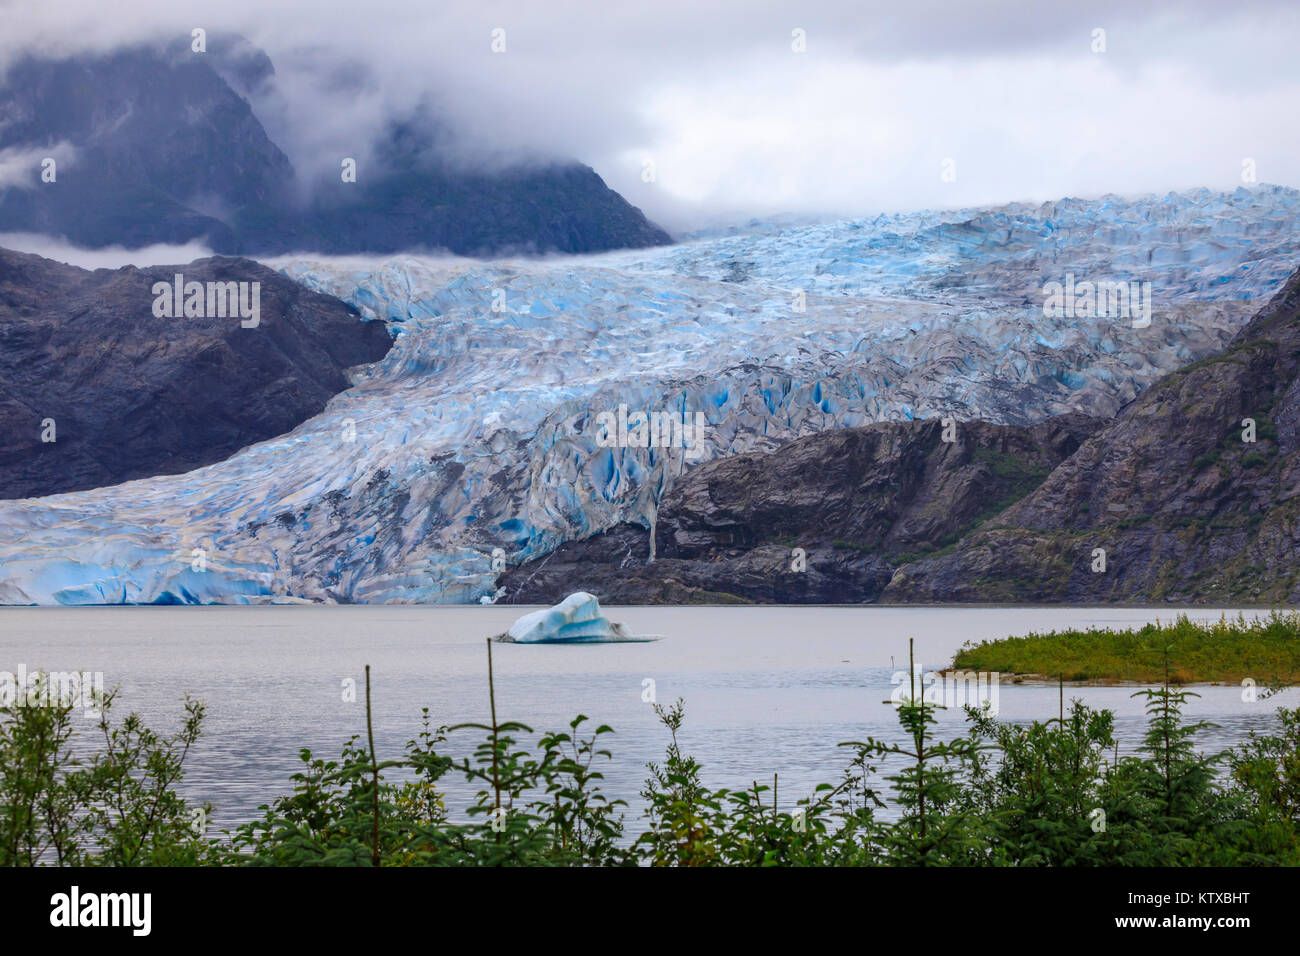 Mendenhall Gletscher und den See, mit Eisberg, helle blaue Eis, Wald und Nebel, von Visitor Centre, Juneau, Alaska, Vereinigte Staaten von Amerika, North Amer Stockfoto